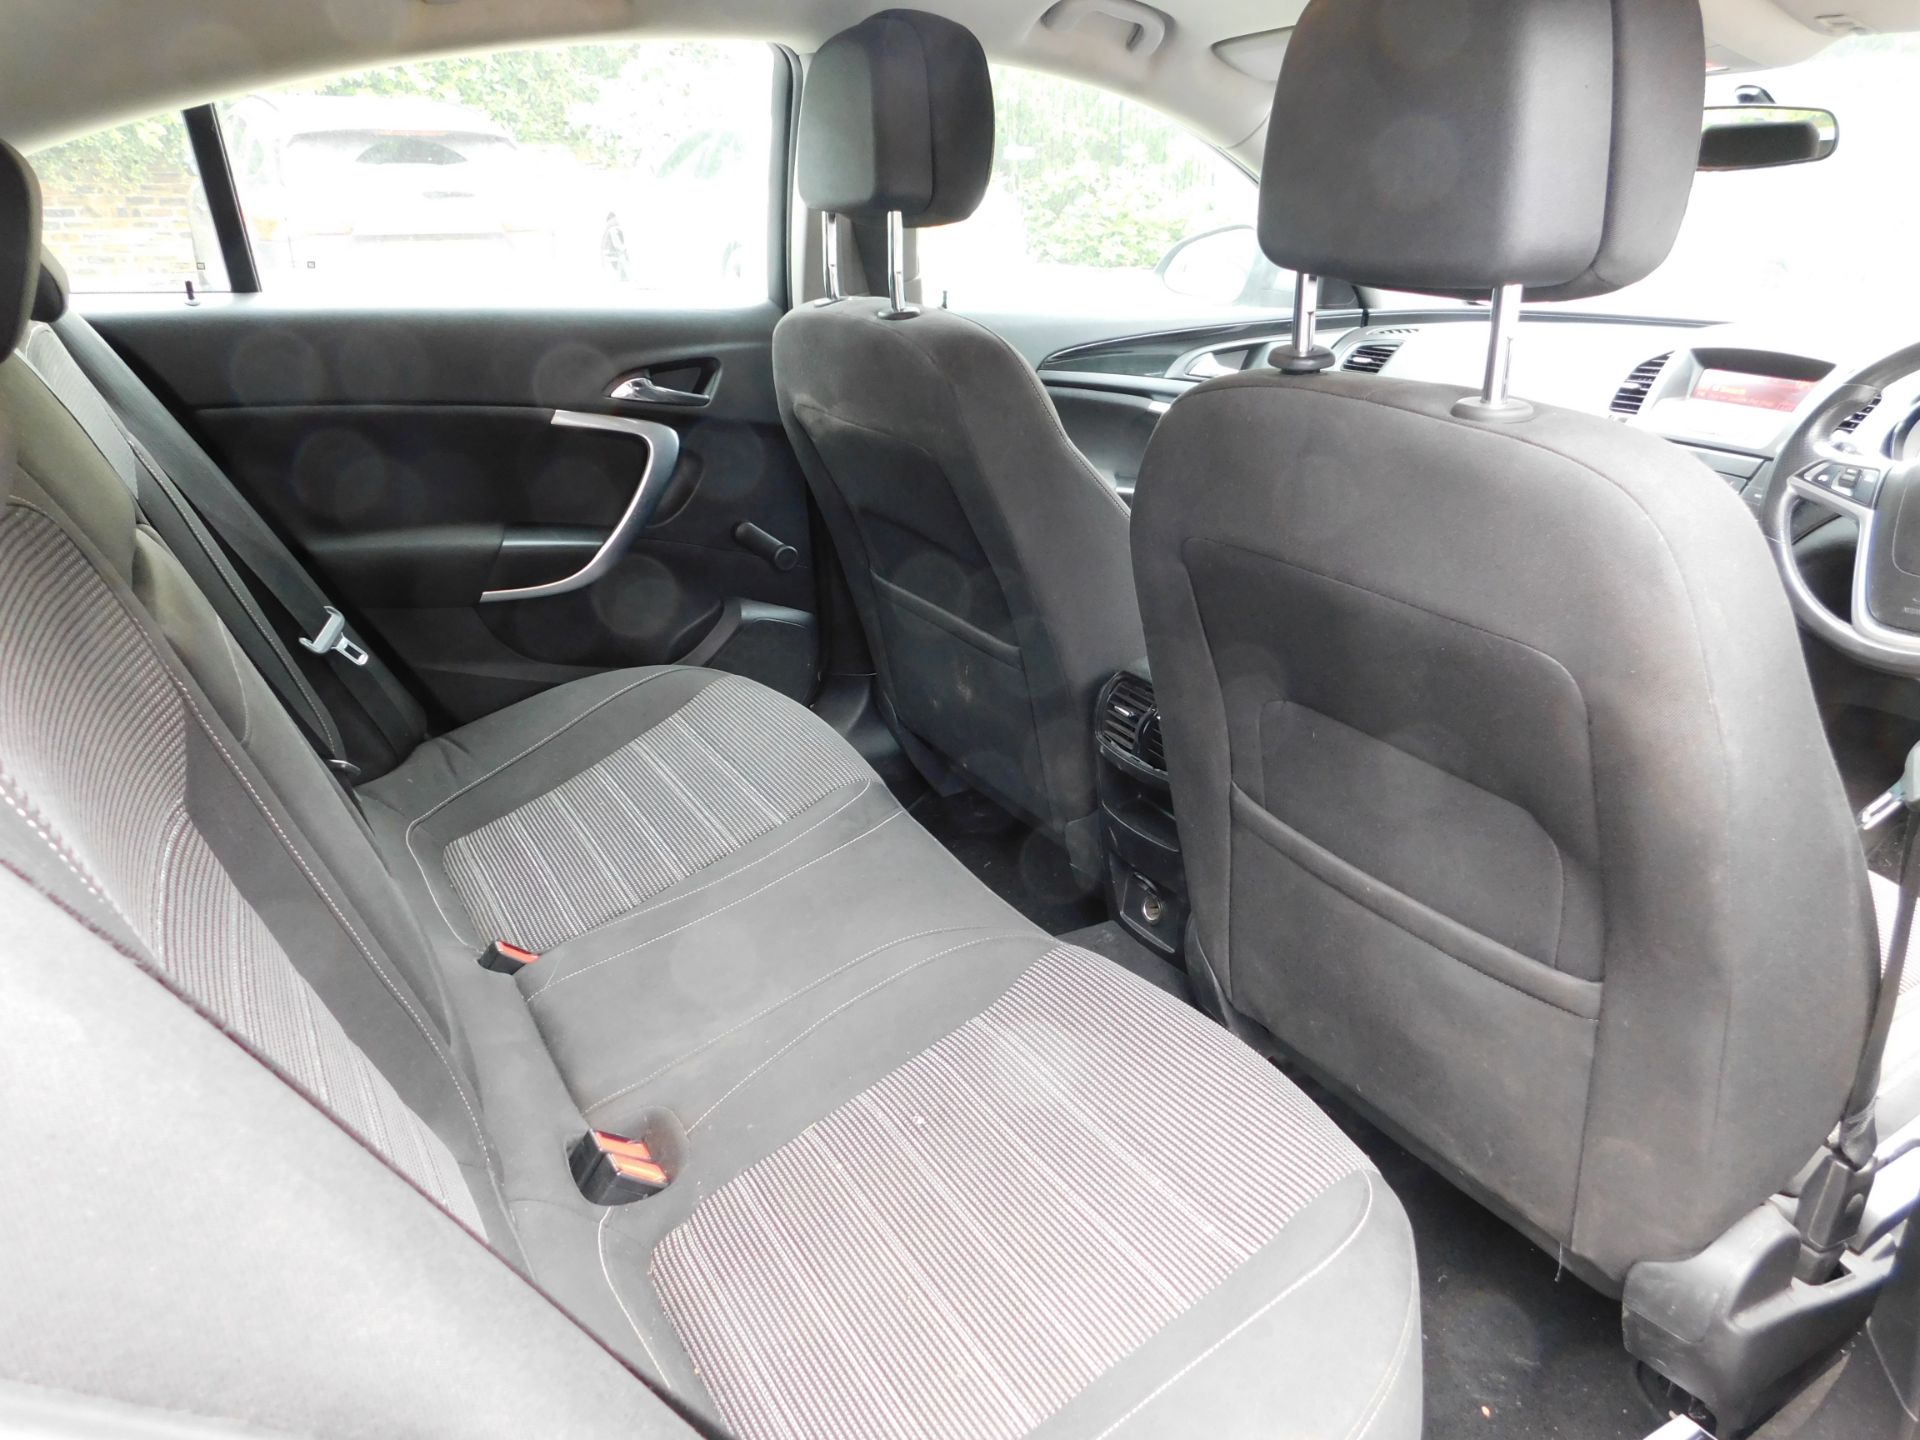 Vauxhall Insignia SRI 2.0CDTI five door hatchback, - Image 15 of 16